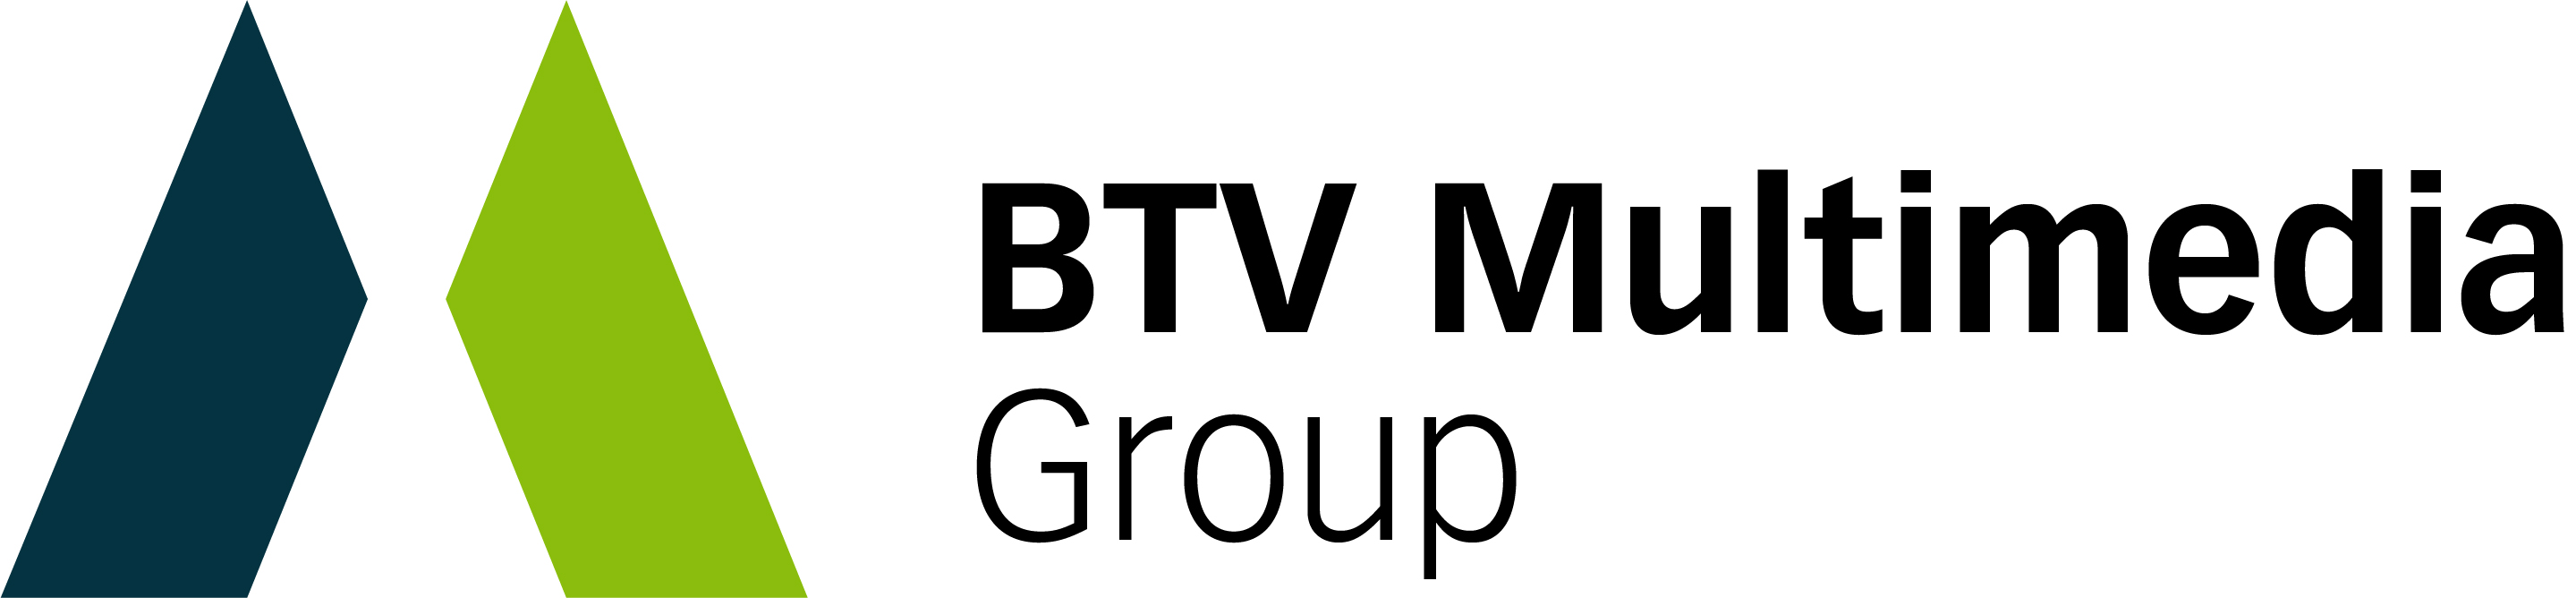 BTV Multimedia Group